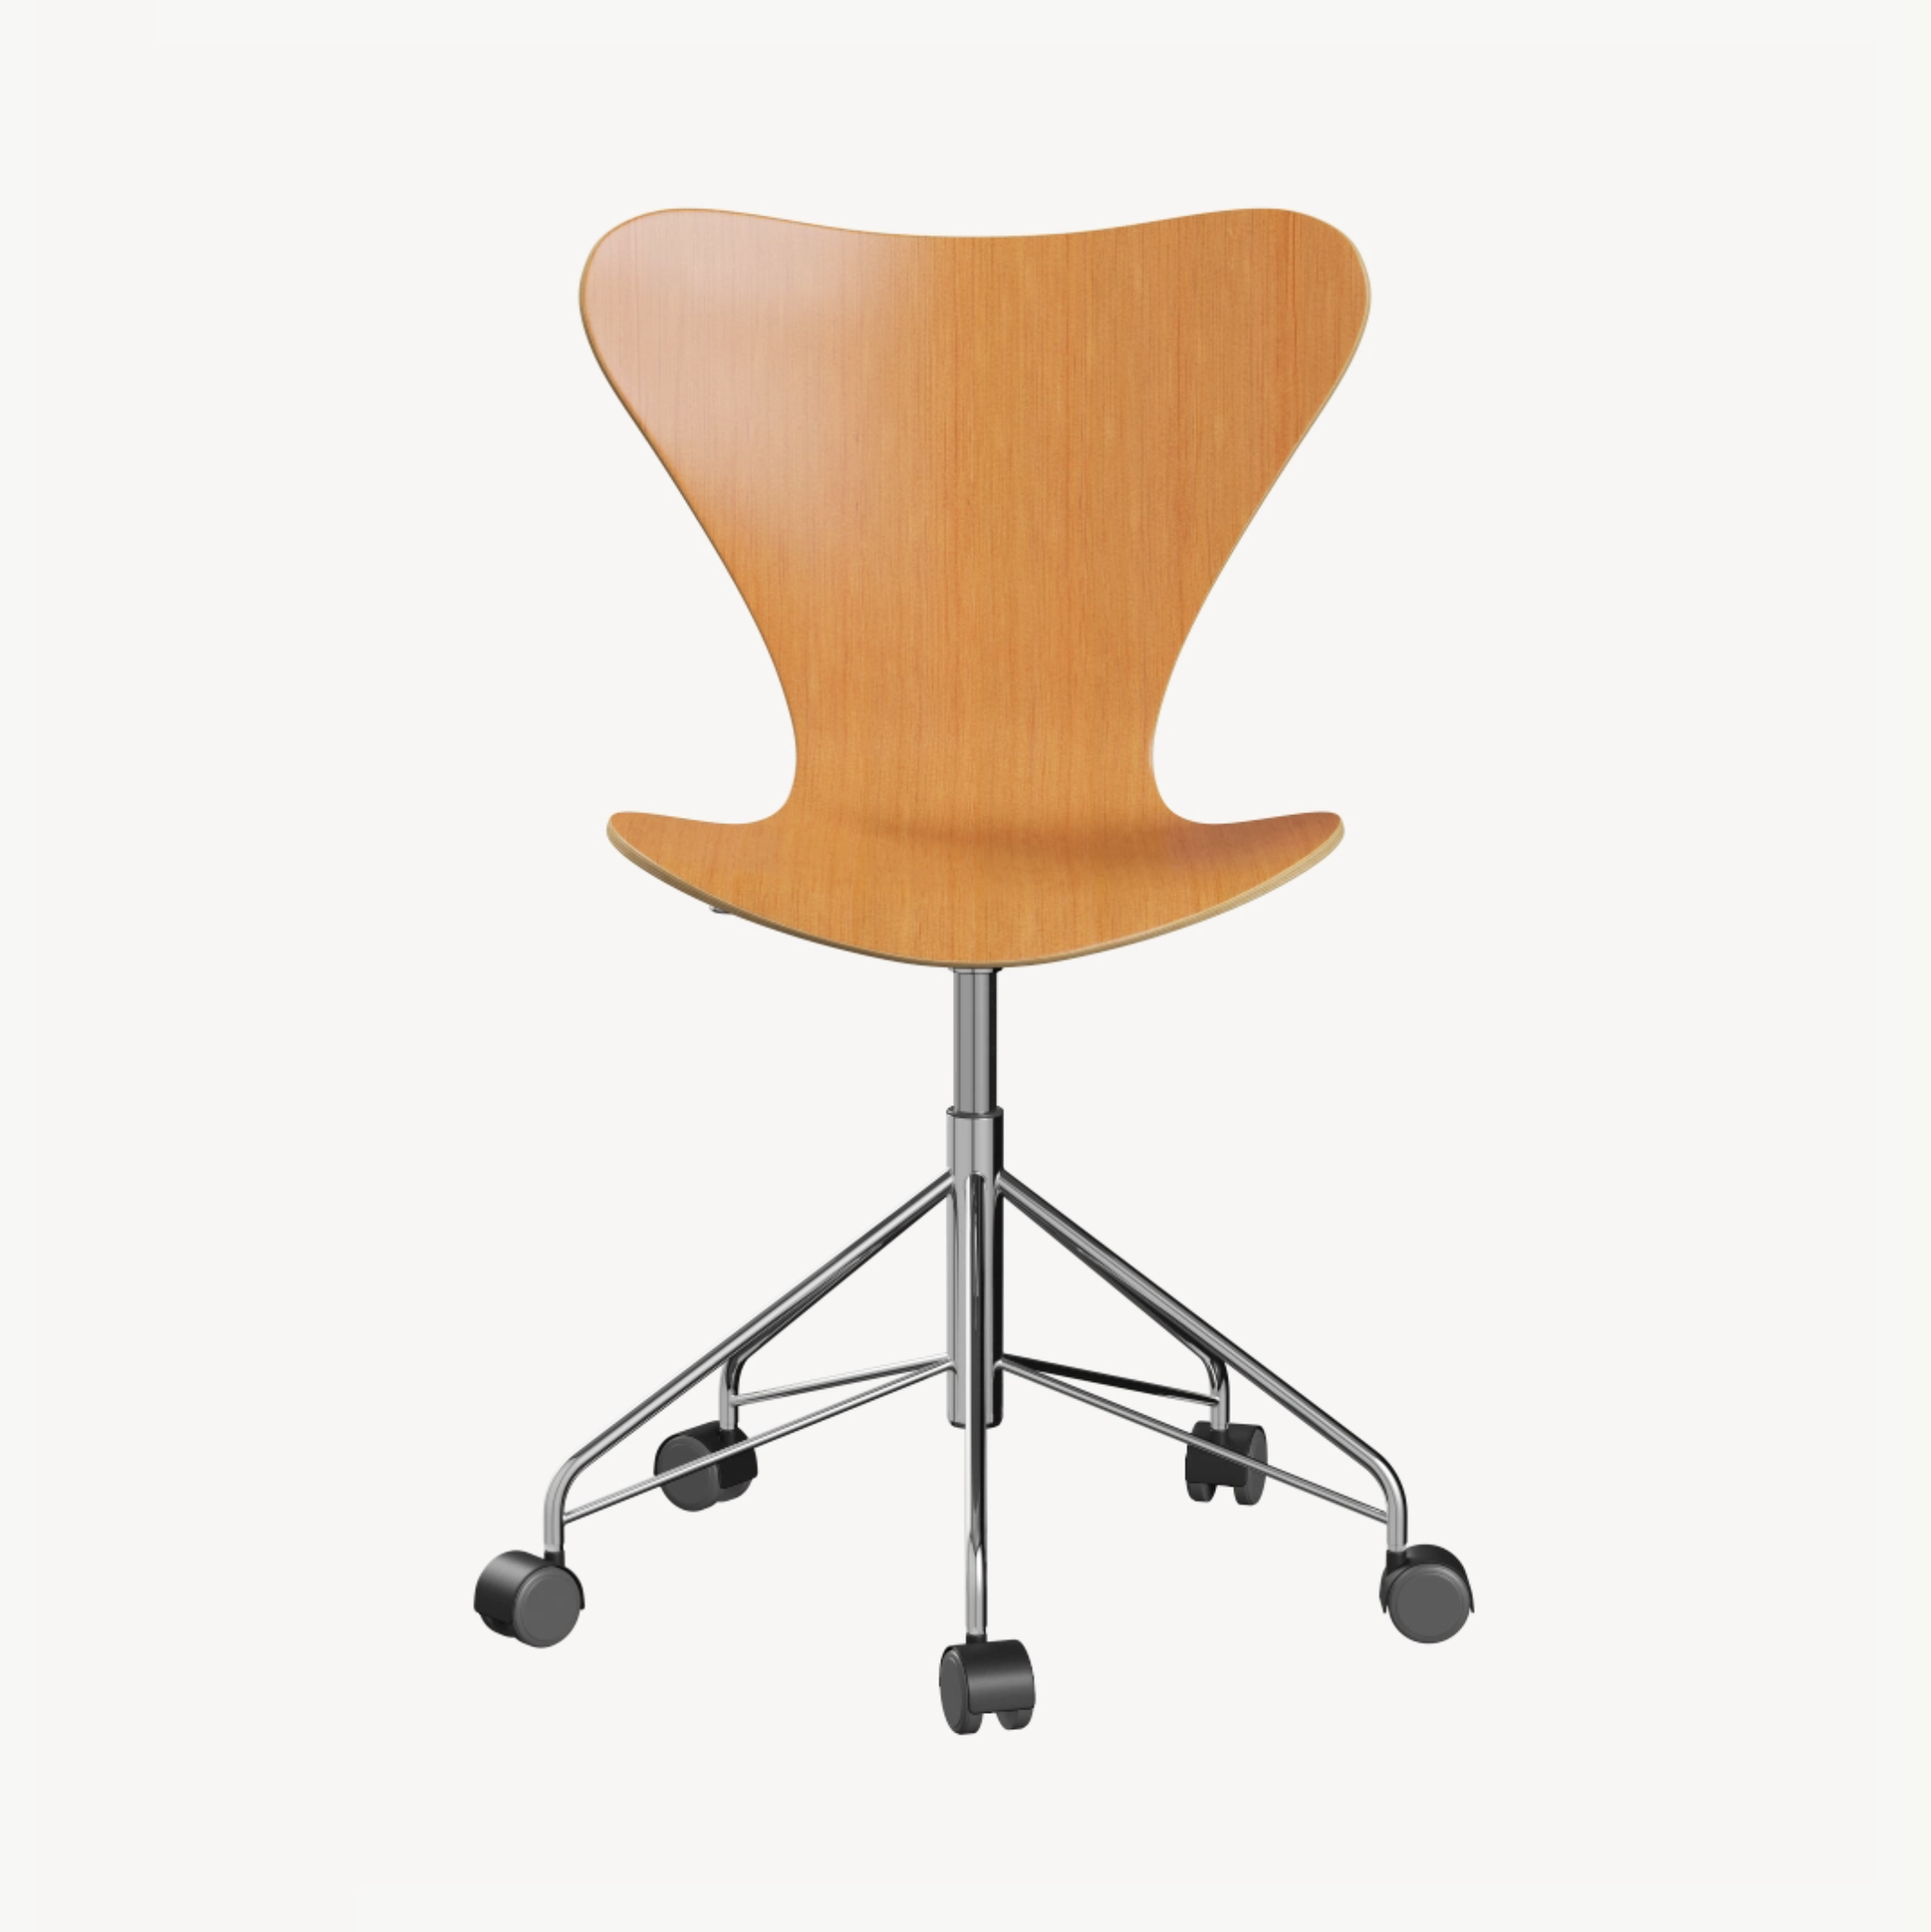 Series 7 Desk Chair